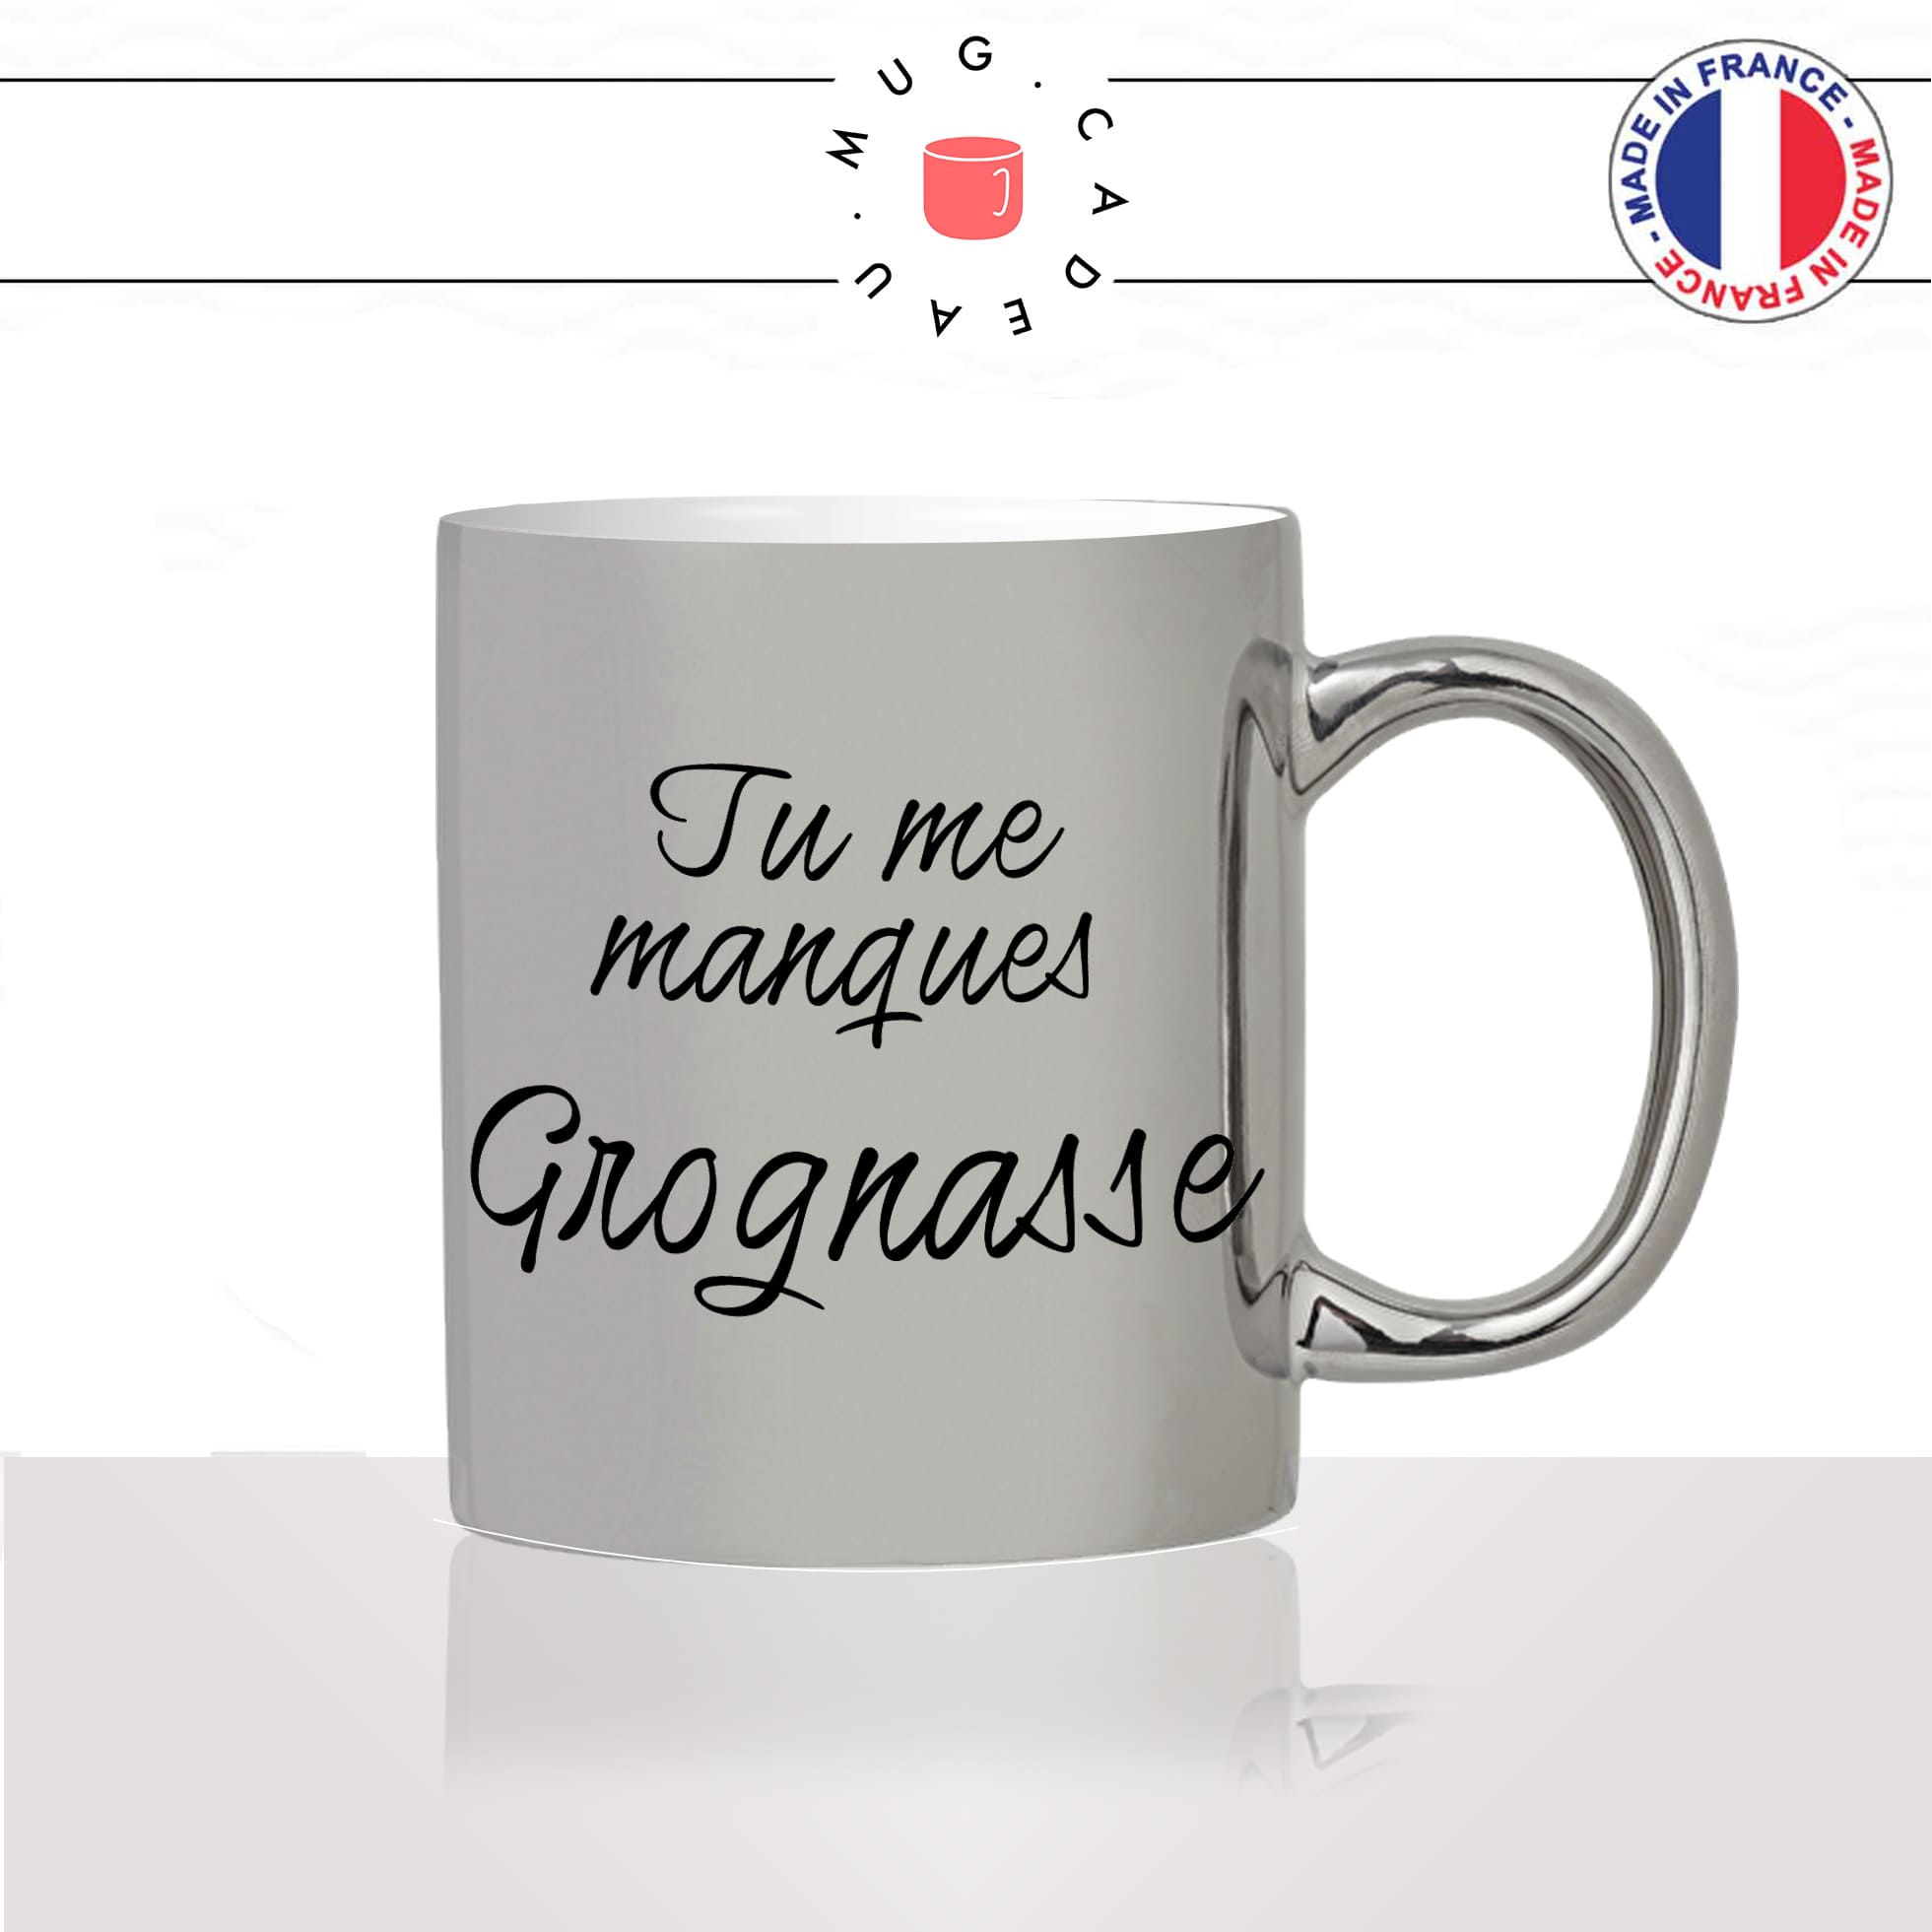 mug-tasse-argenté-argent-gris-silver-tu-me-manques-grognasse-copine-collegue-homme-femme-parodie-humour-fun-cool-idée-cadeau-original2